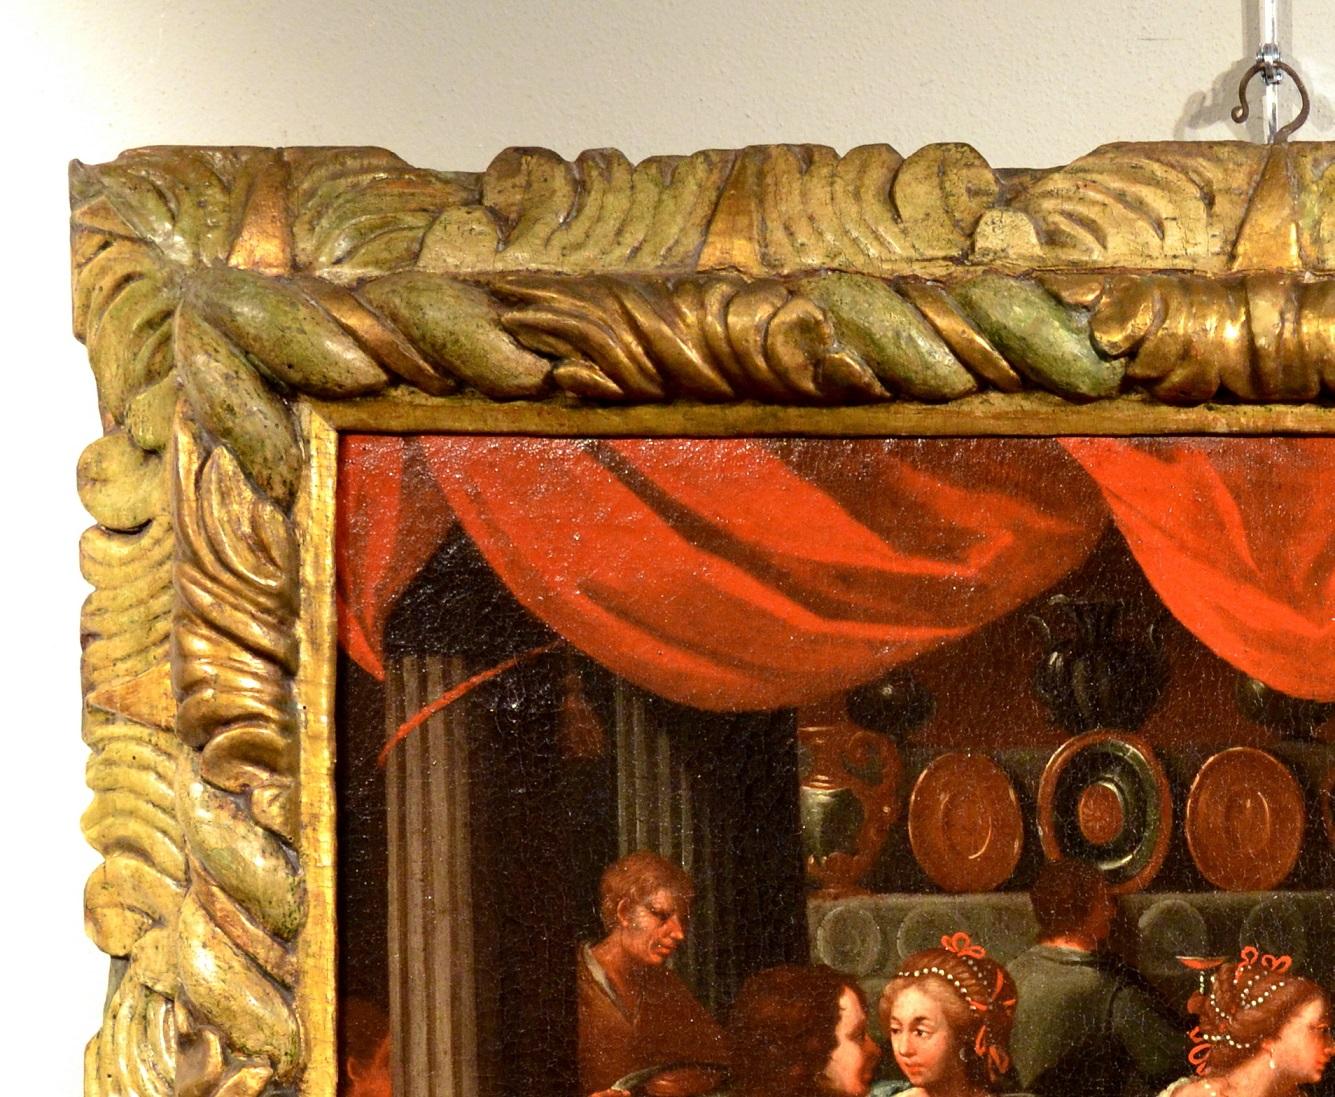 Die Vergnügungen des verlorenen Sohnes
Flämischer Maler, der im frühen 17. Jahrhundert in Venetien tätig war

Ölgemälde auf Leinwand
Cm. 62 x 74
Mit antik geschnitztem und lackiertem Rahmen cm. 82 x 95

Wir werden Zeuge eines üppigen Festmahls in